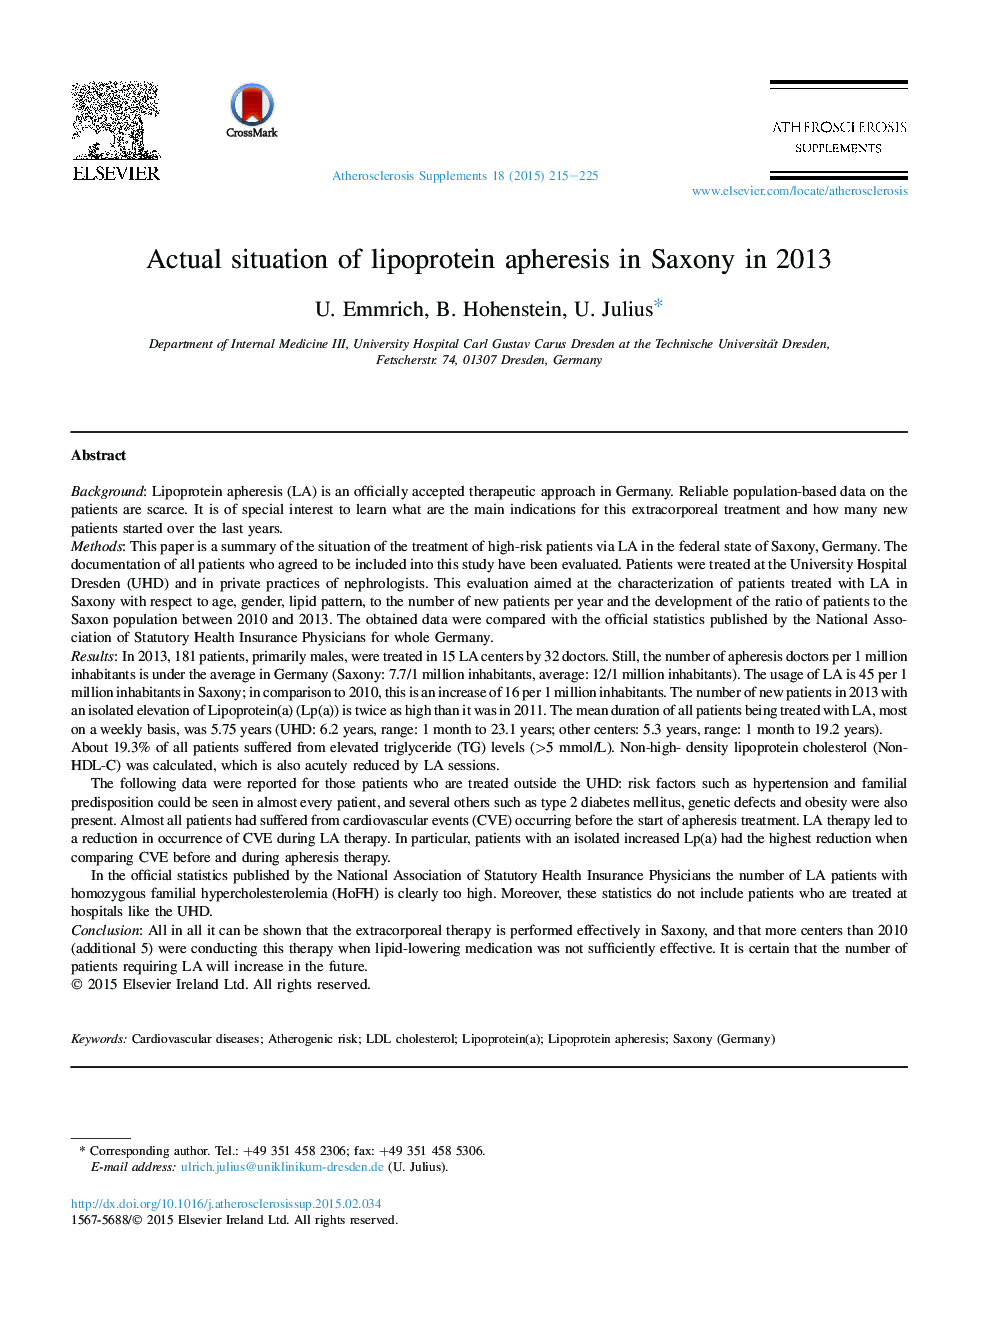 وضعیت واقعی آیفیر لیپوپروتئین در ساکسونی در سال 2013 